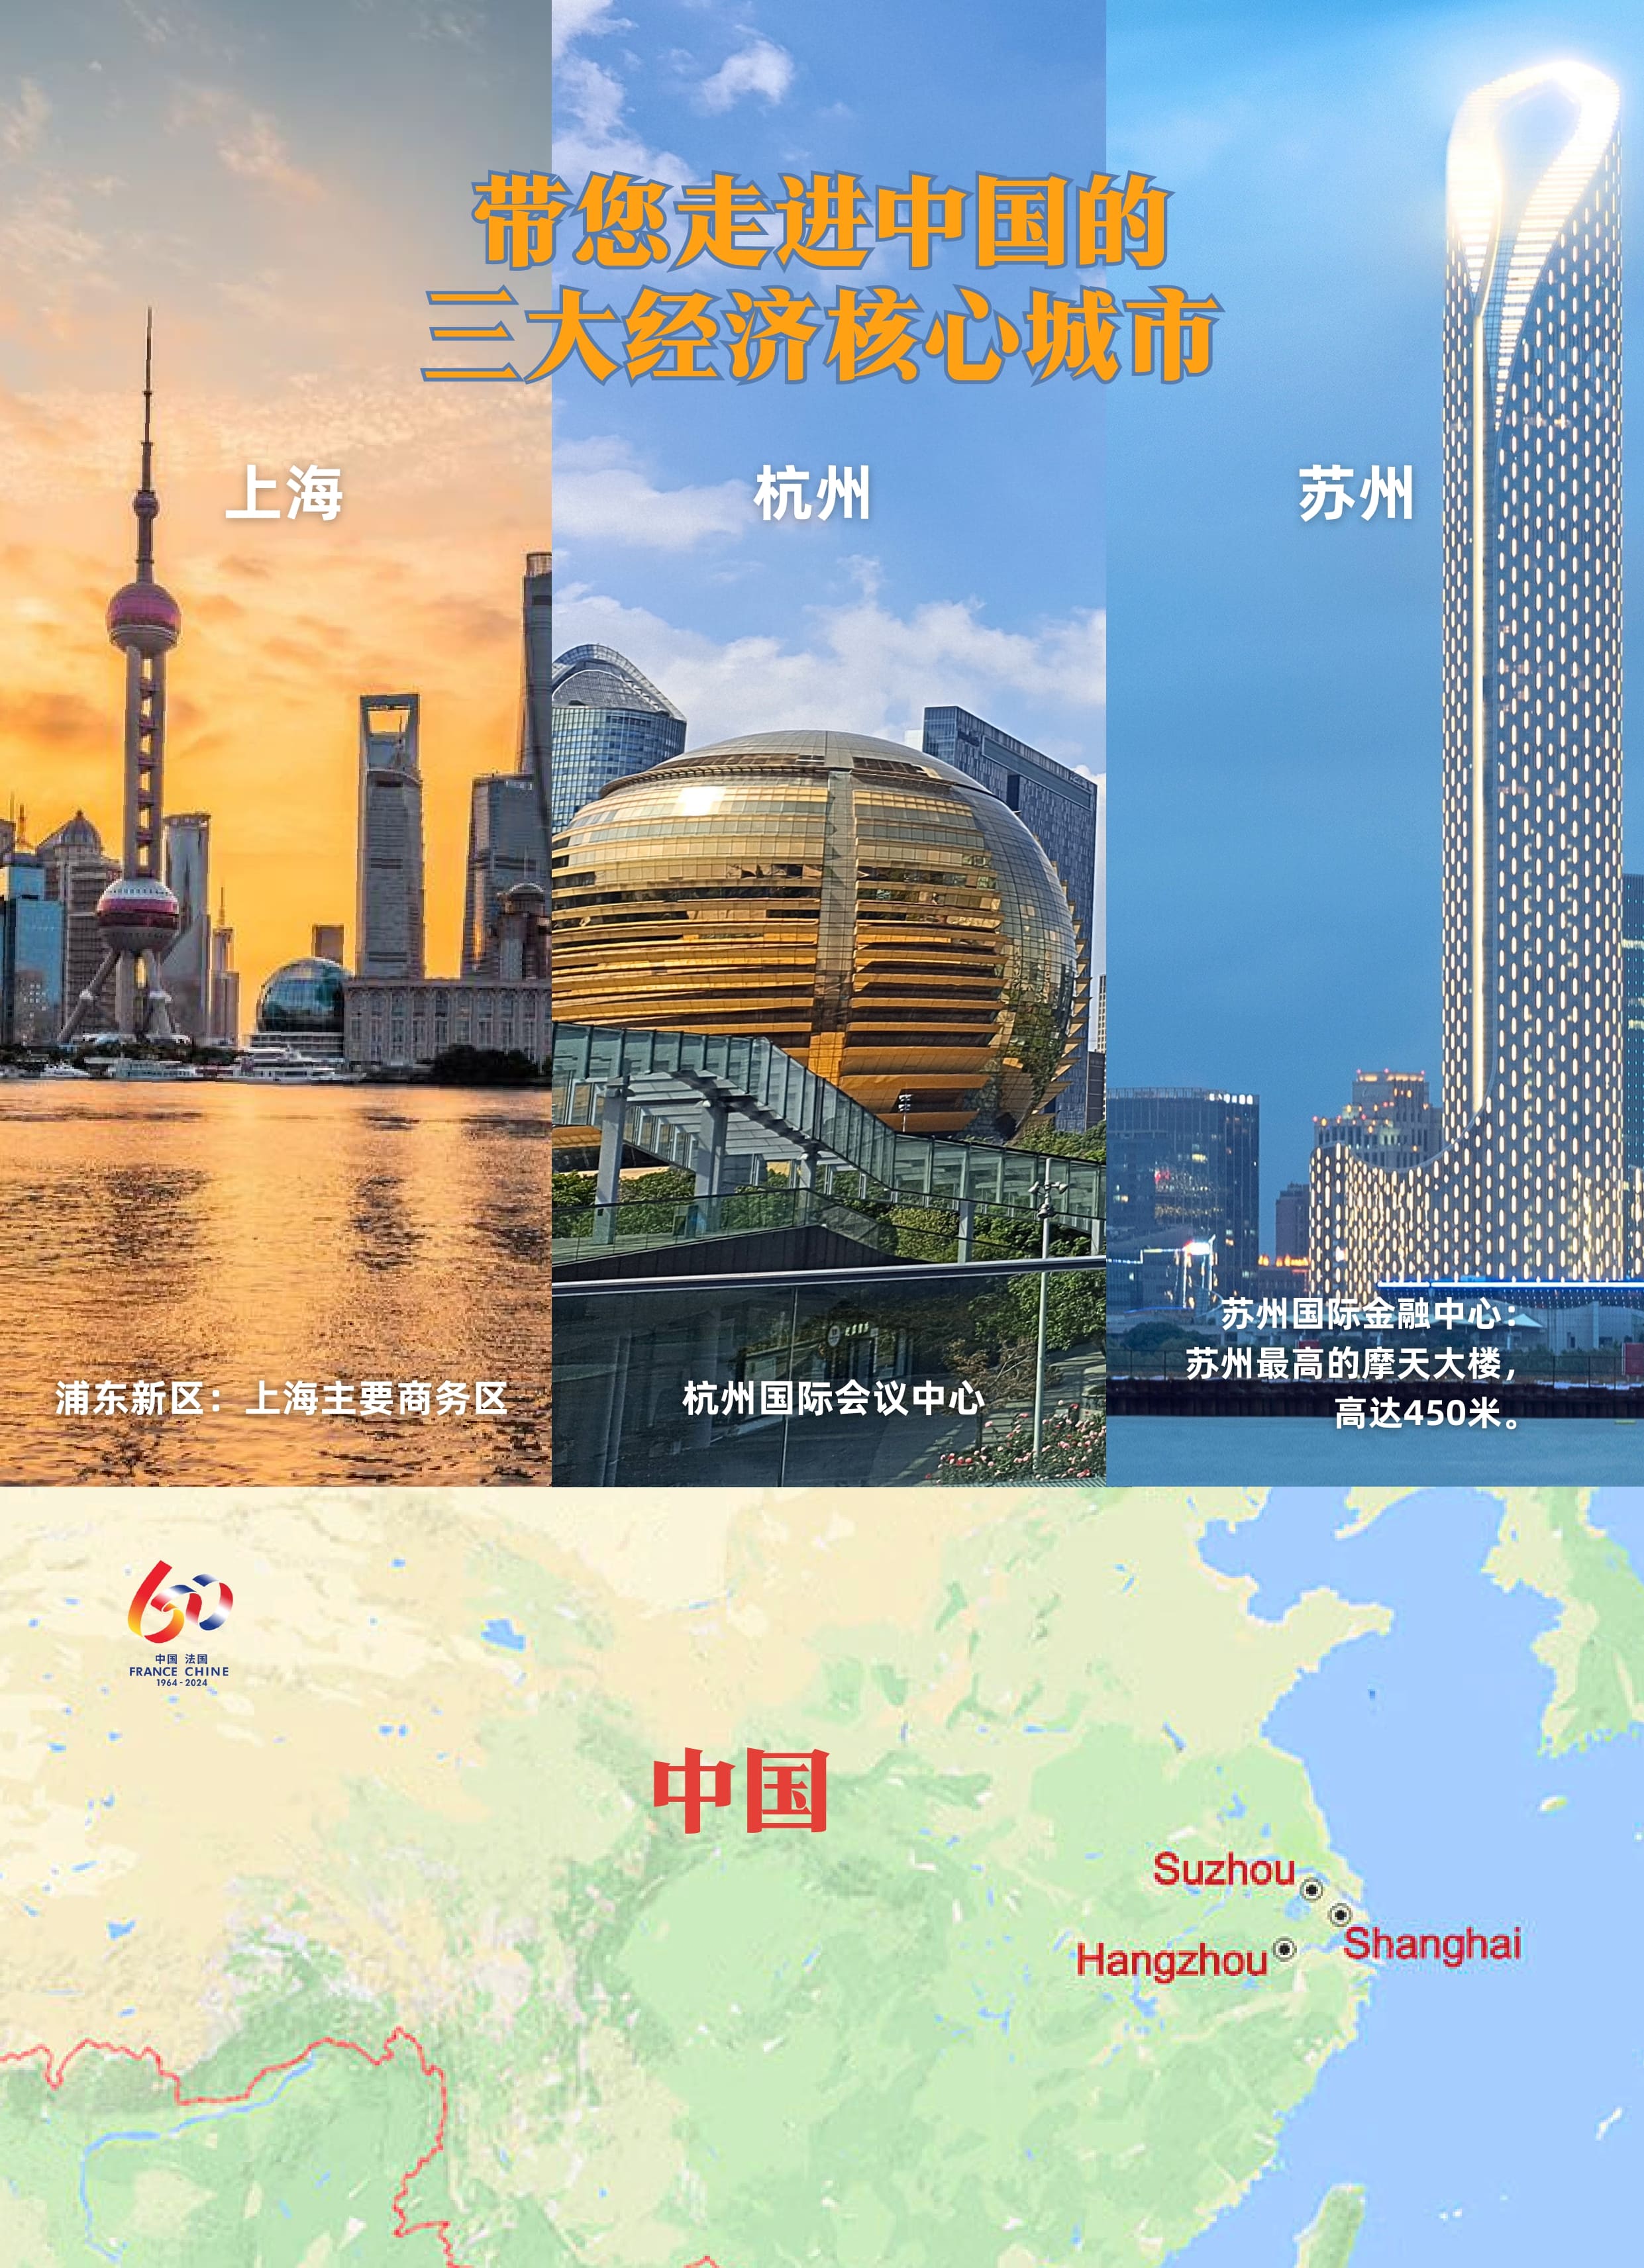 YOYOER Voyage en Chine_page-0002